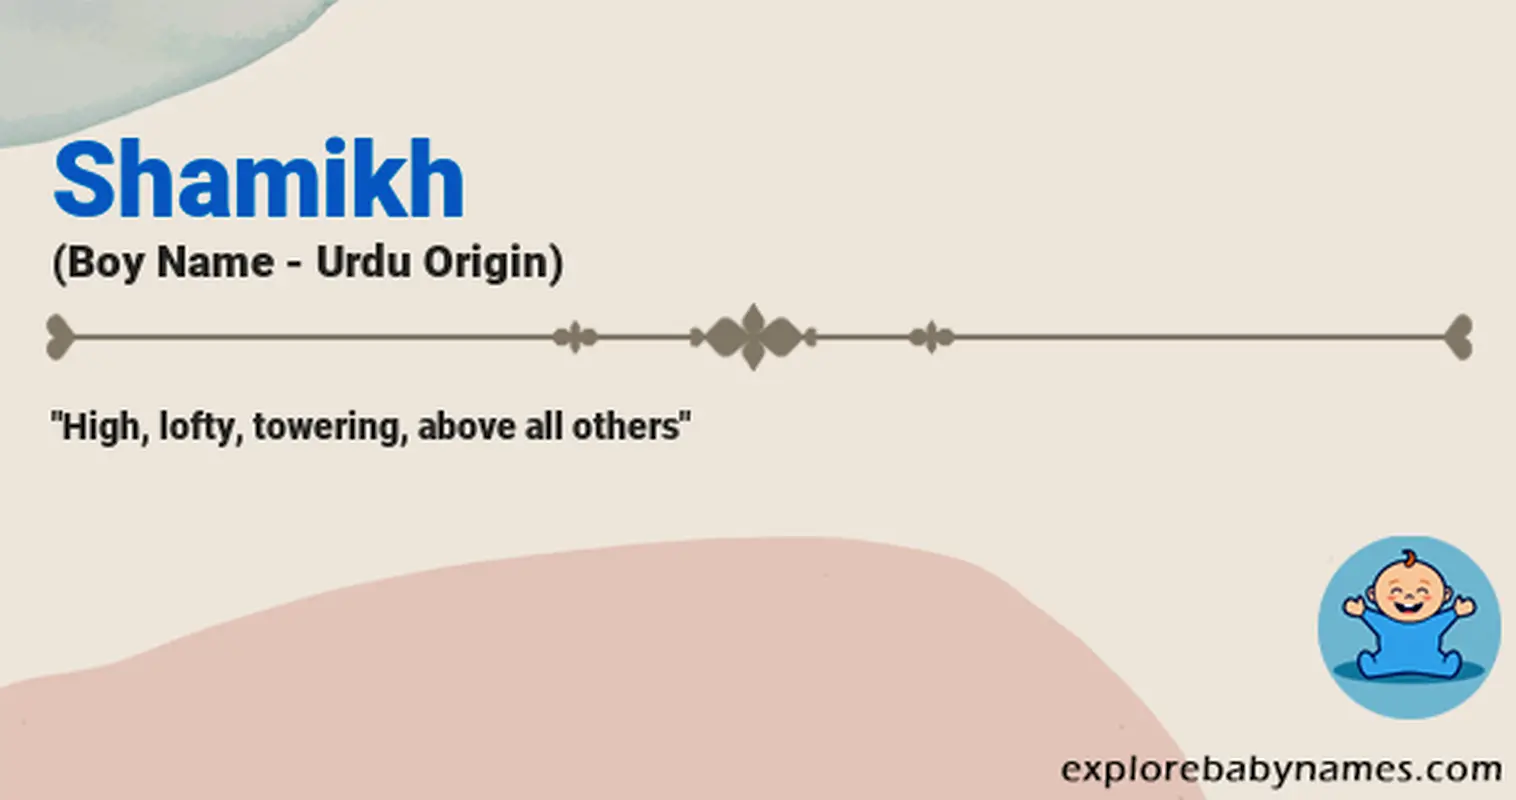 Meaning of Shamikh